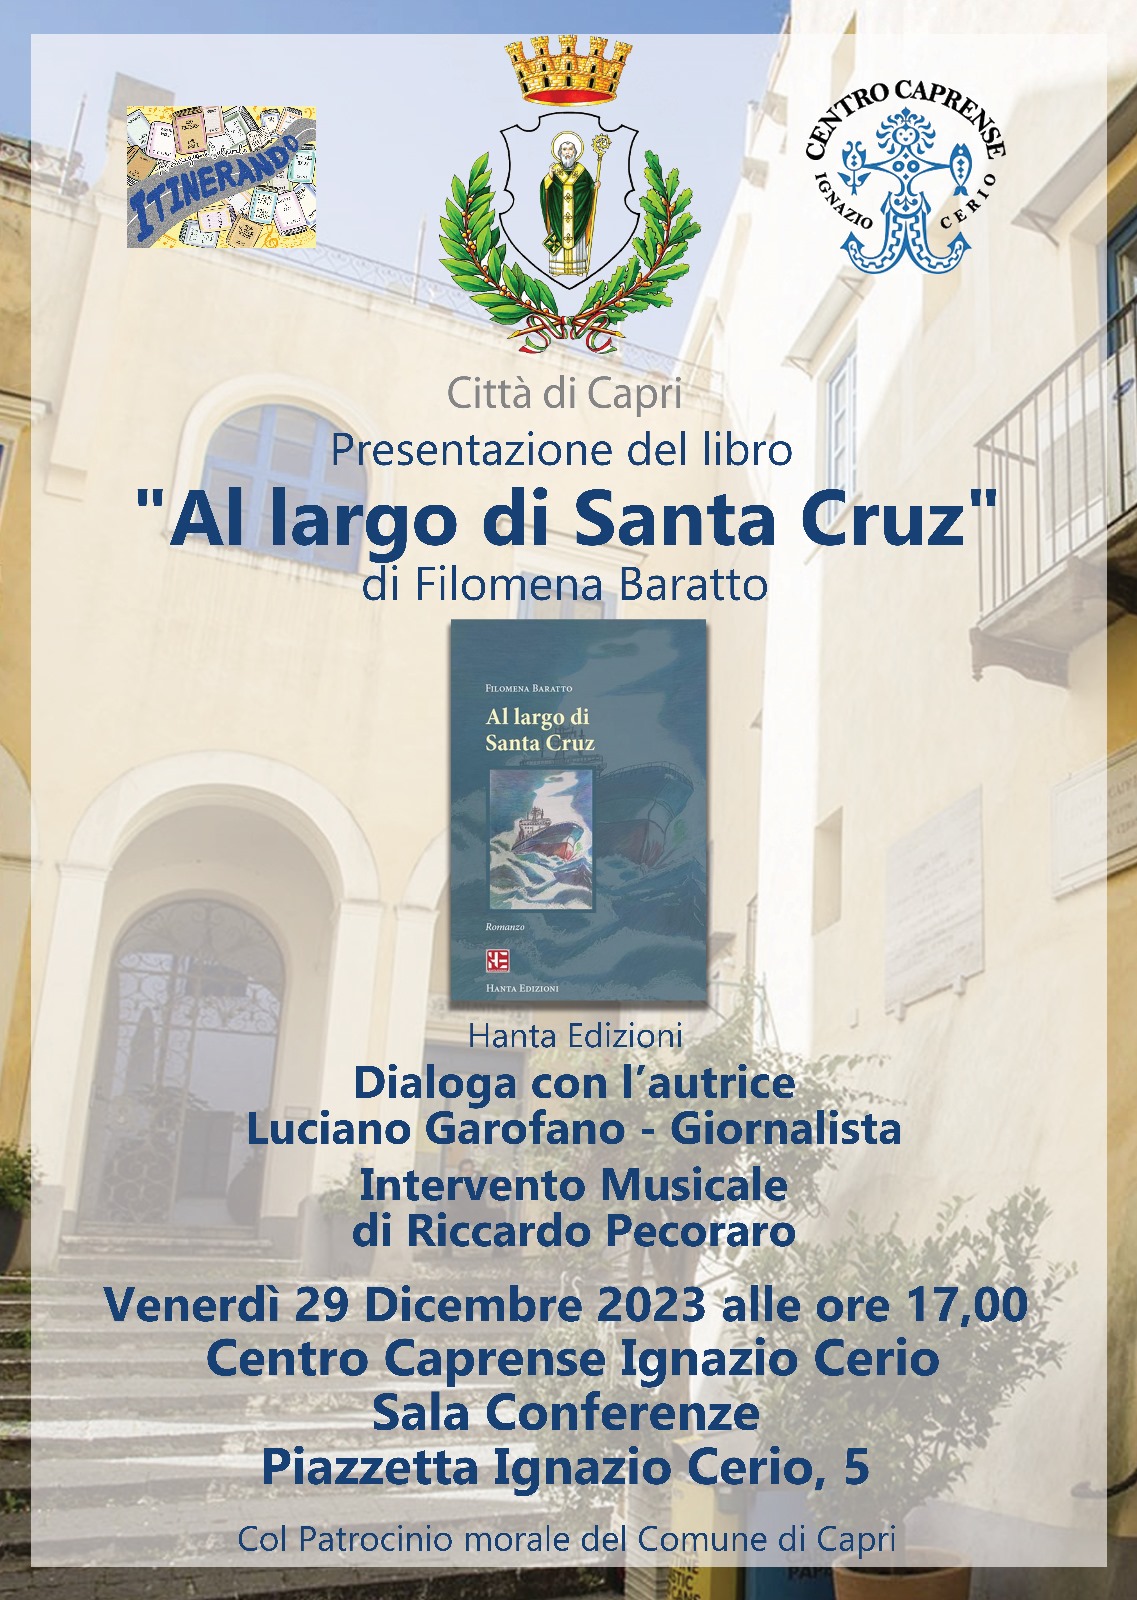 Al Centro Caprense la presentazione del libro “Al largo di Santa Cruz”, Hanta Edizioni, di Filomena Baratto